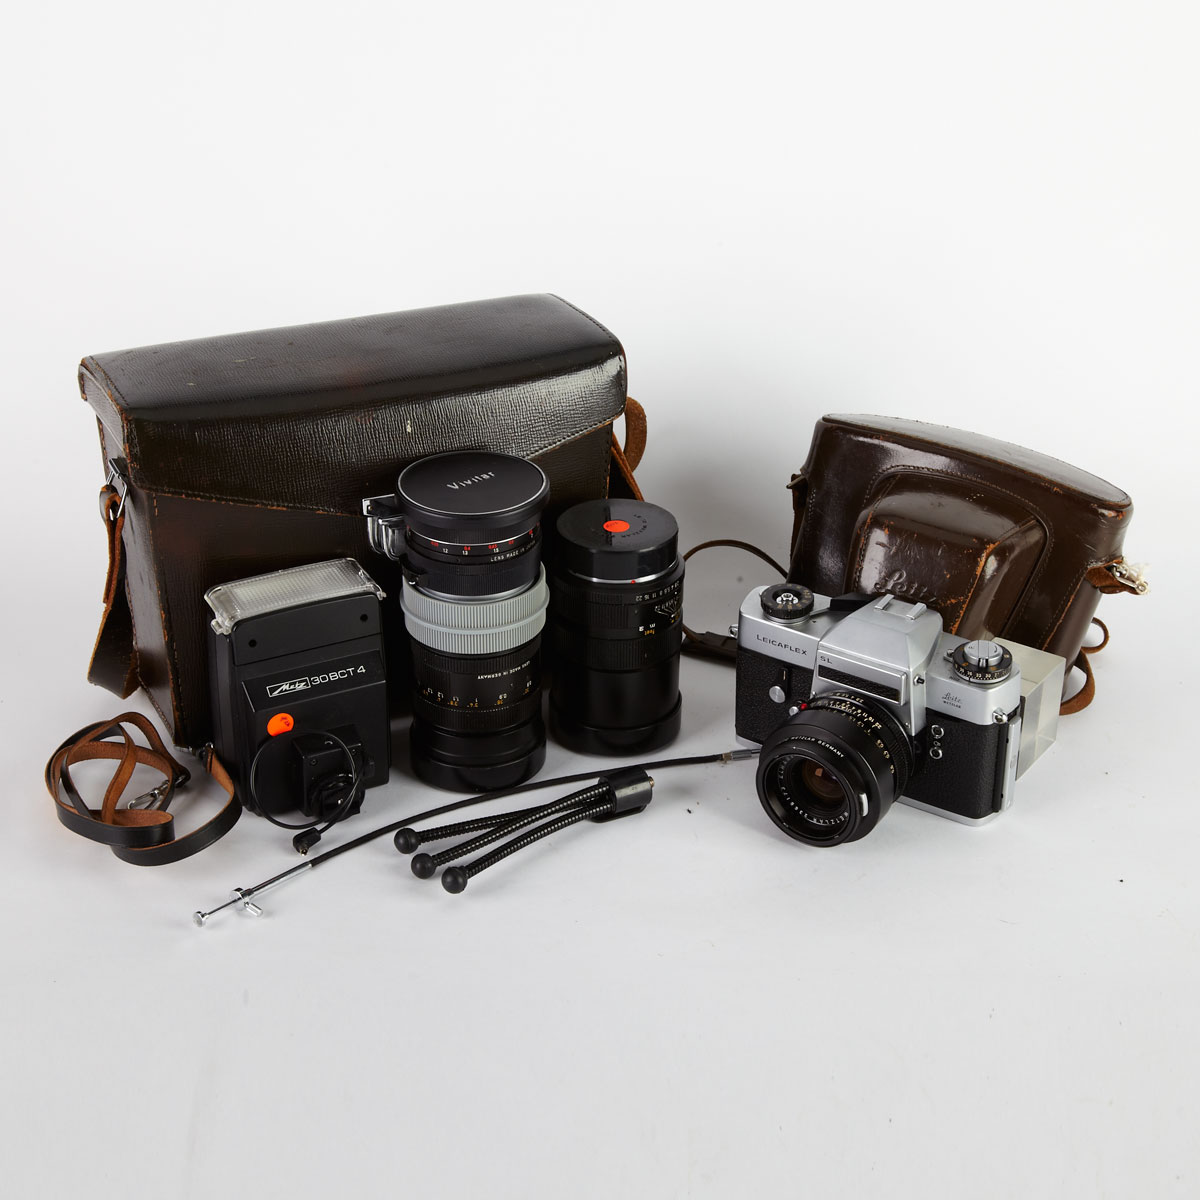 Leica Camera Set c 1970 Leicflex 17a283